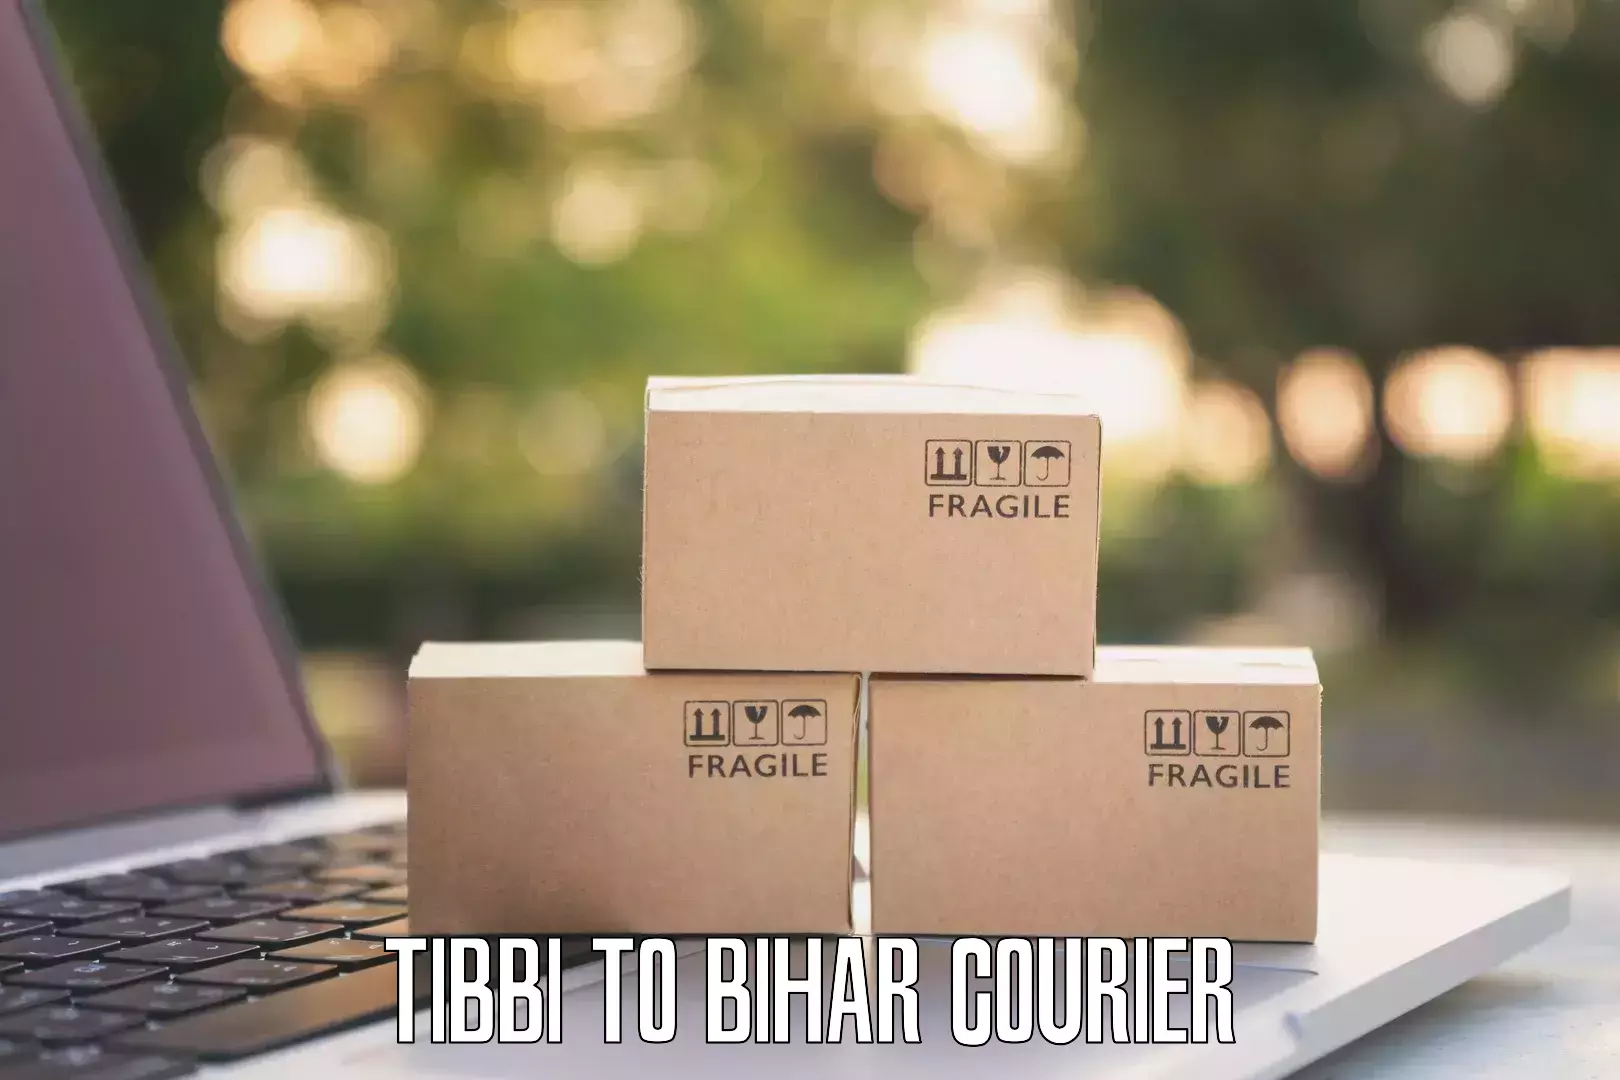 Premium courier services Tibbi to Dhaka